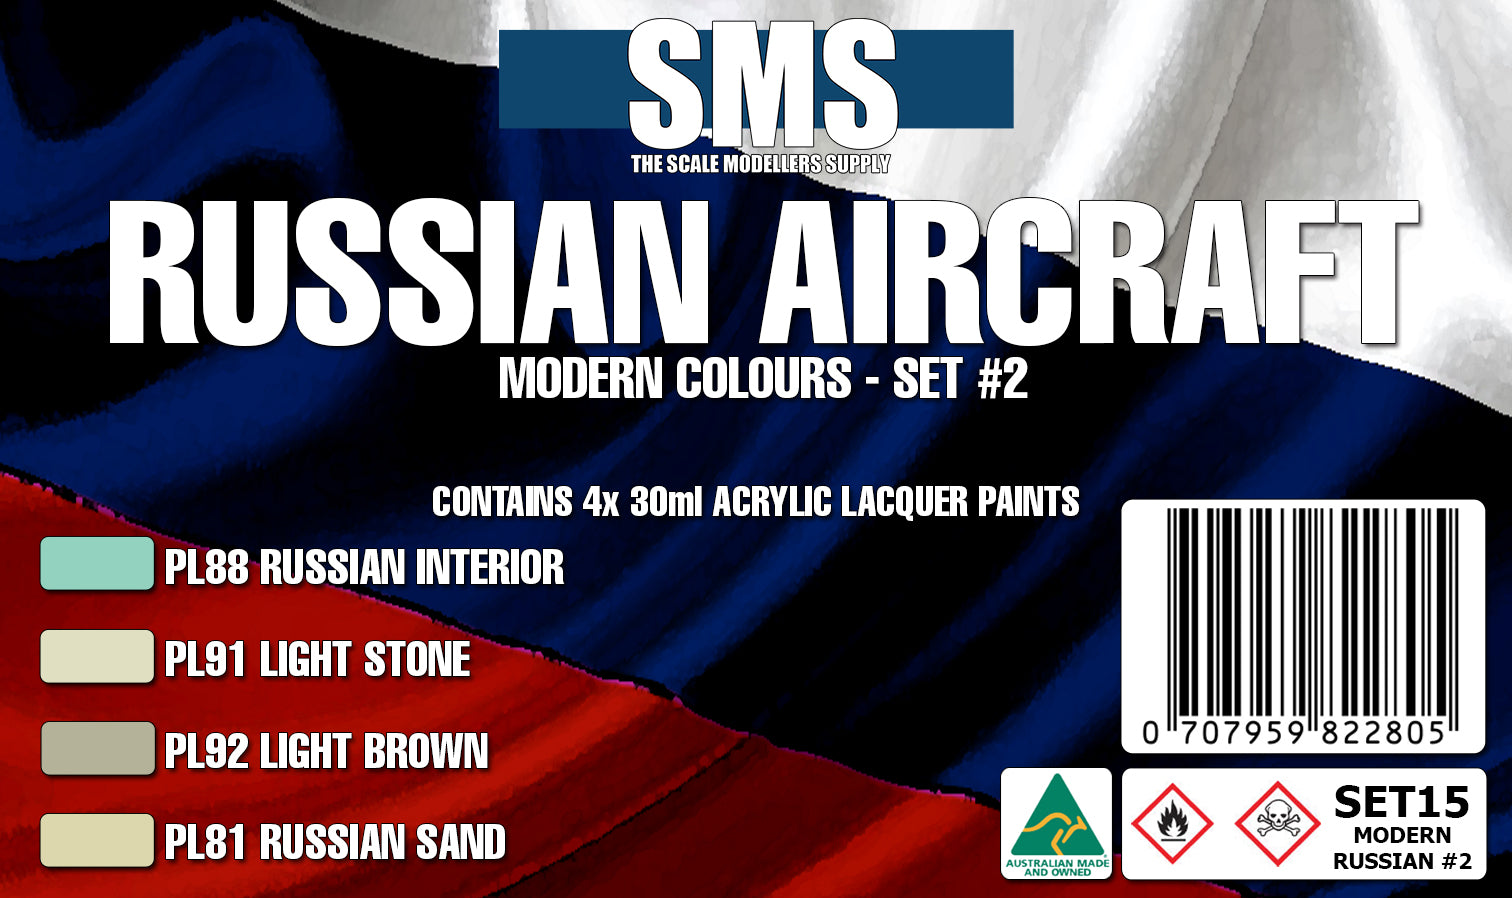 MODERN RUSSIAN AIRCRAFT #02 Colour Set